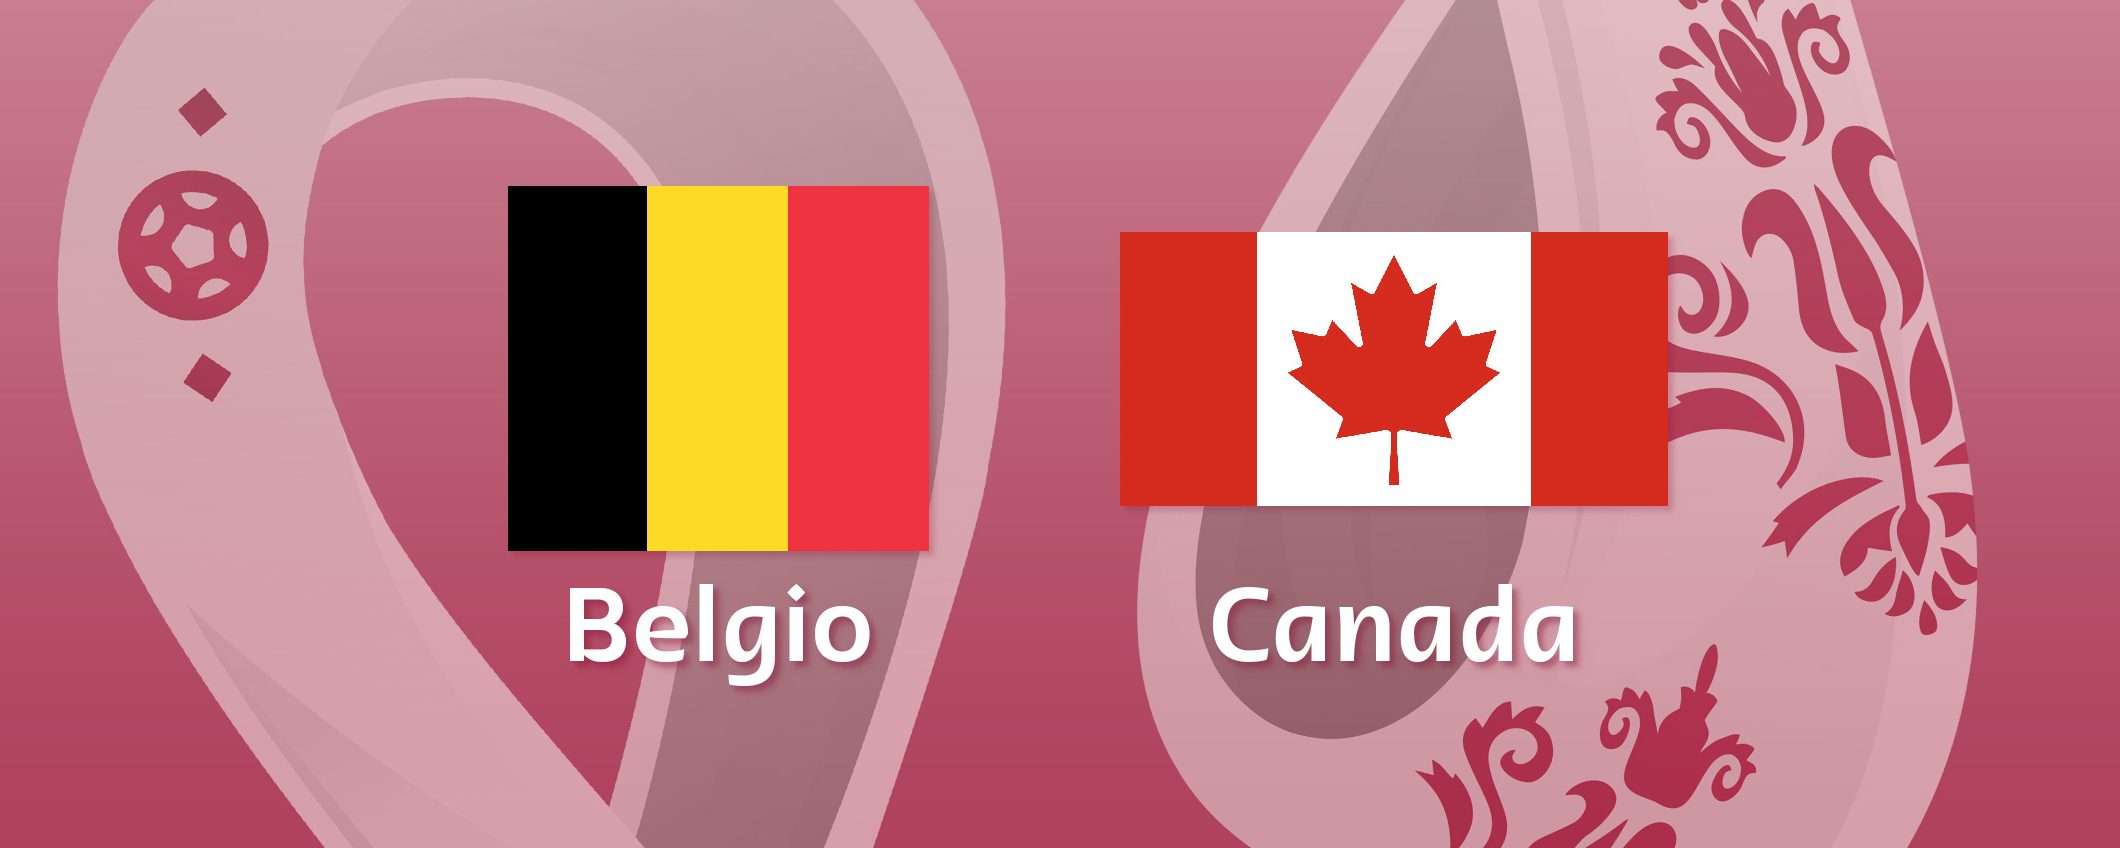 Come vedere Belgio-Canada in streaming (Mondiali)